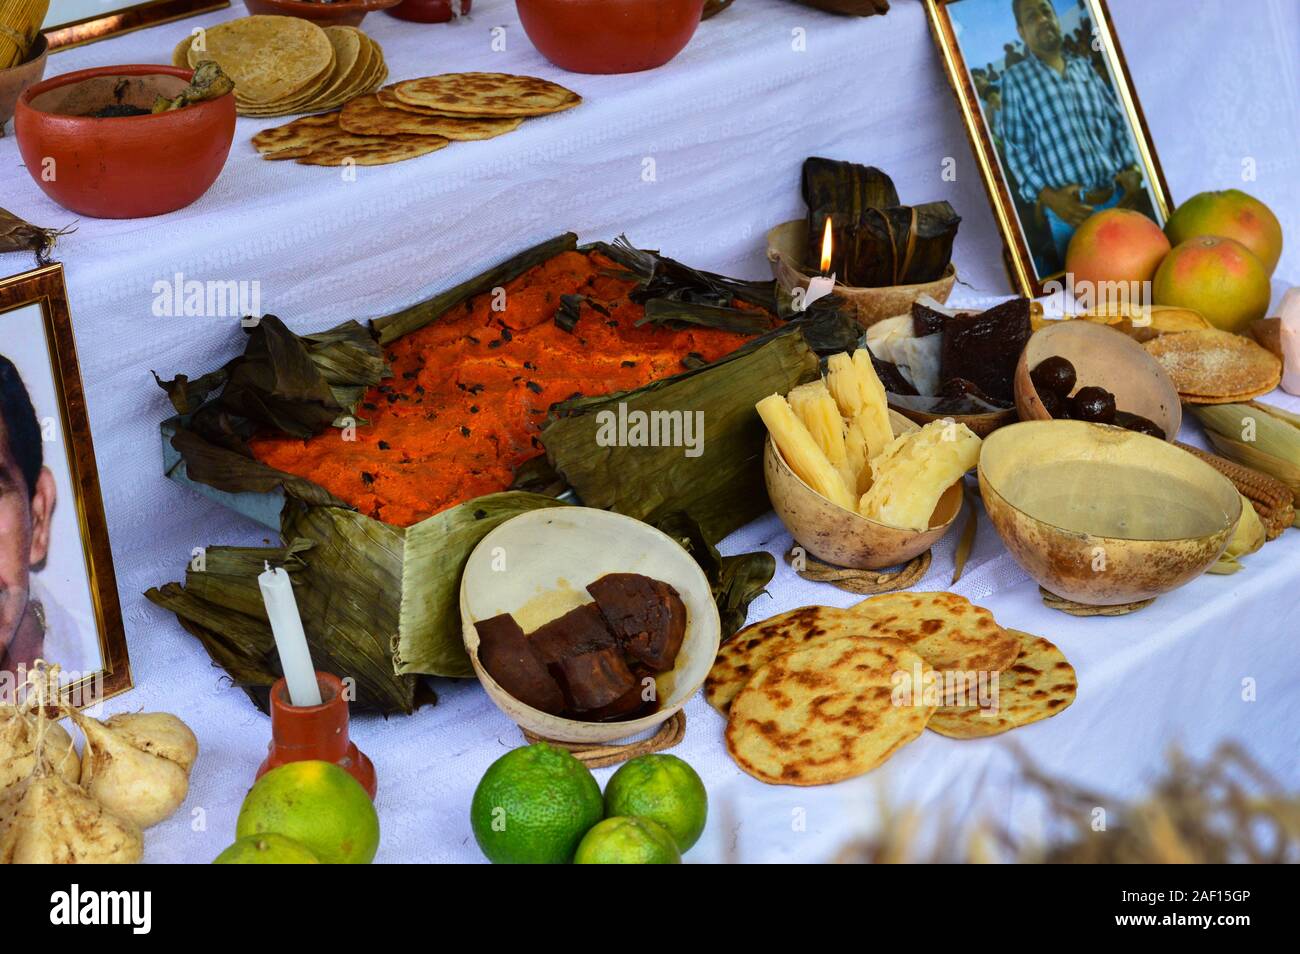 Giorno tradizionale dei morti altare in Merida, Yucatan. L'offerta include Pib Massimo Mauro, dessert di frutta, ecc. Foto Stock